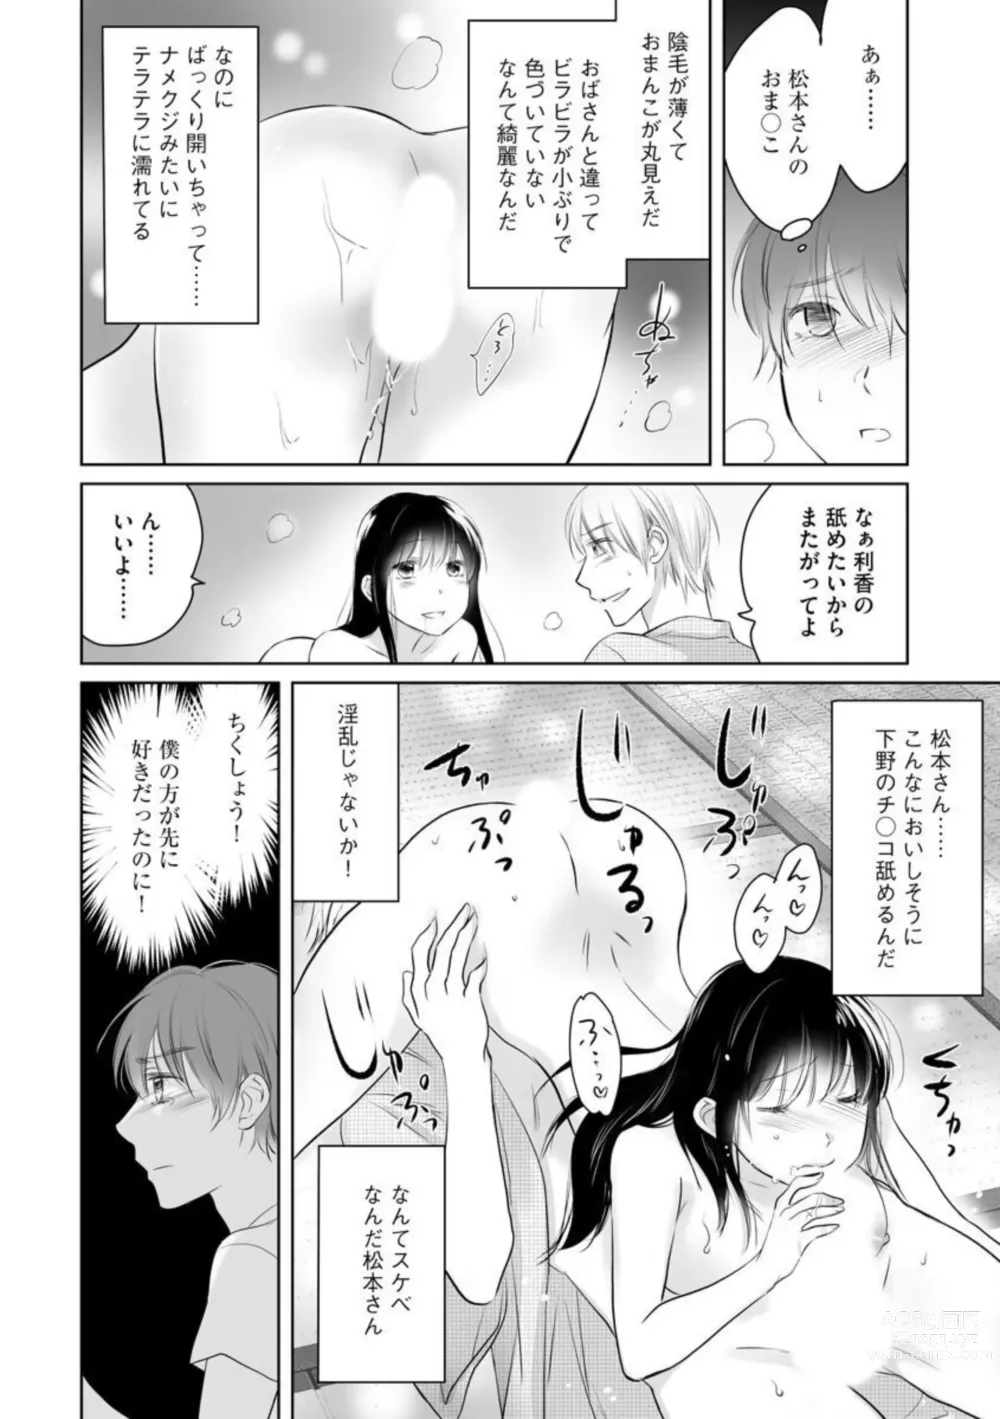 Page 42 of manga Nozoki ana oba to Boku no Himitsu no Natsuyasumi 1-2